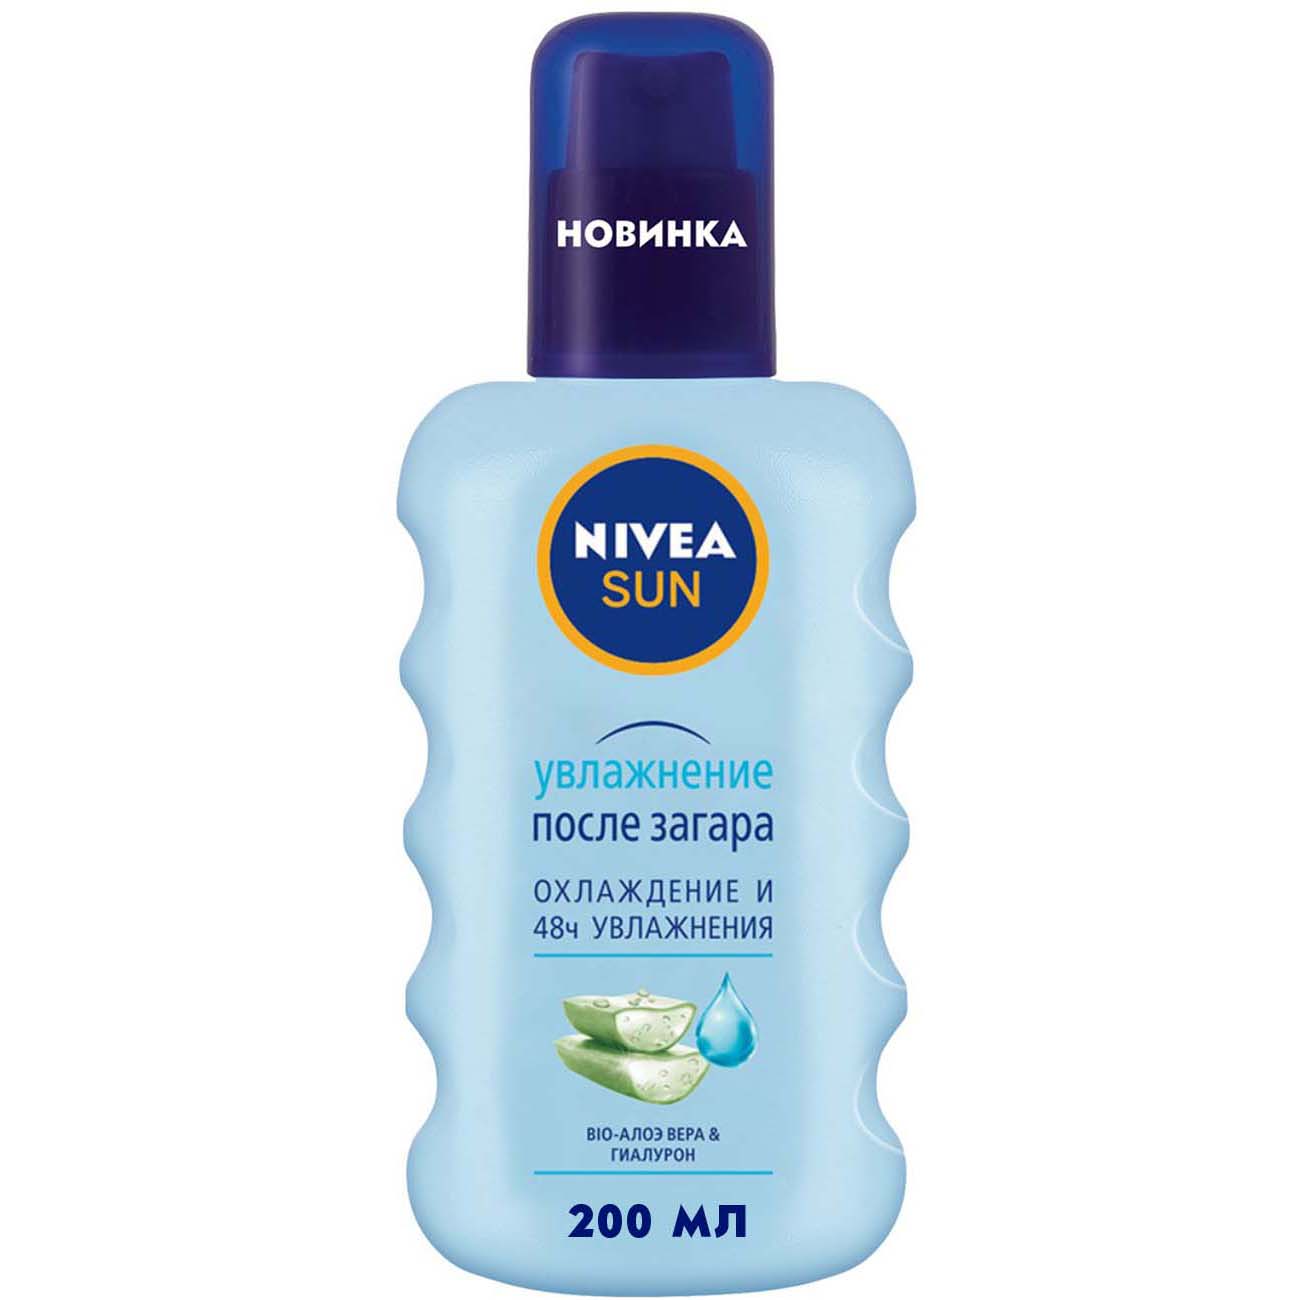 Освежающий спрей Nivea Sun Увлажнение после загара 200 мл - фото 1